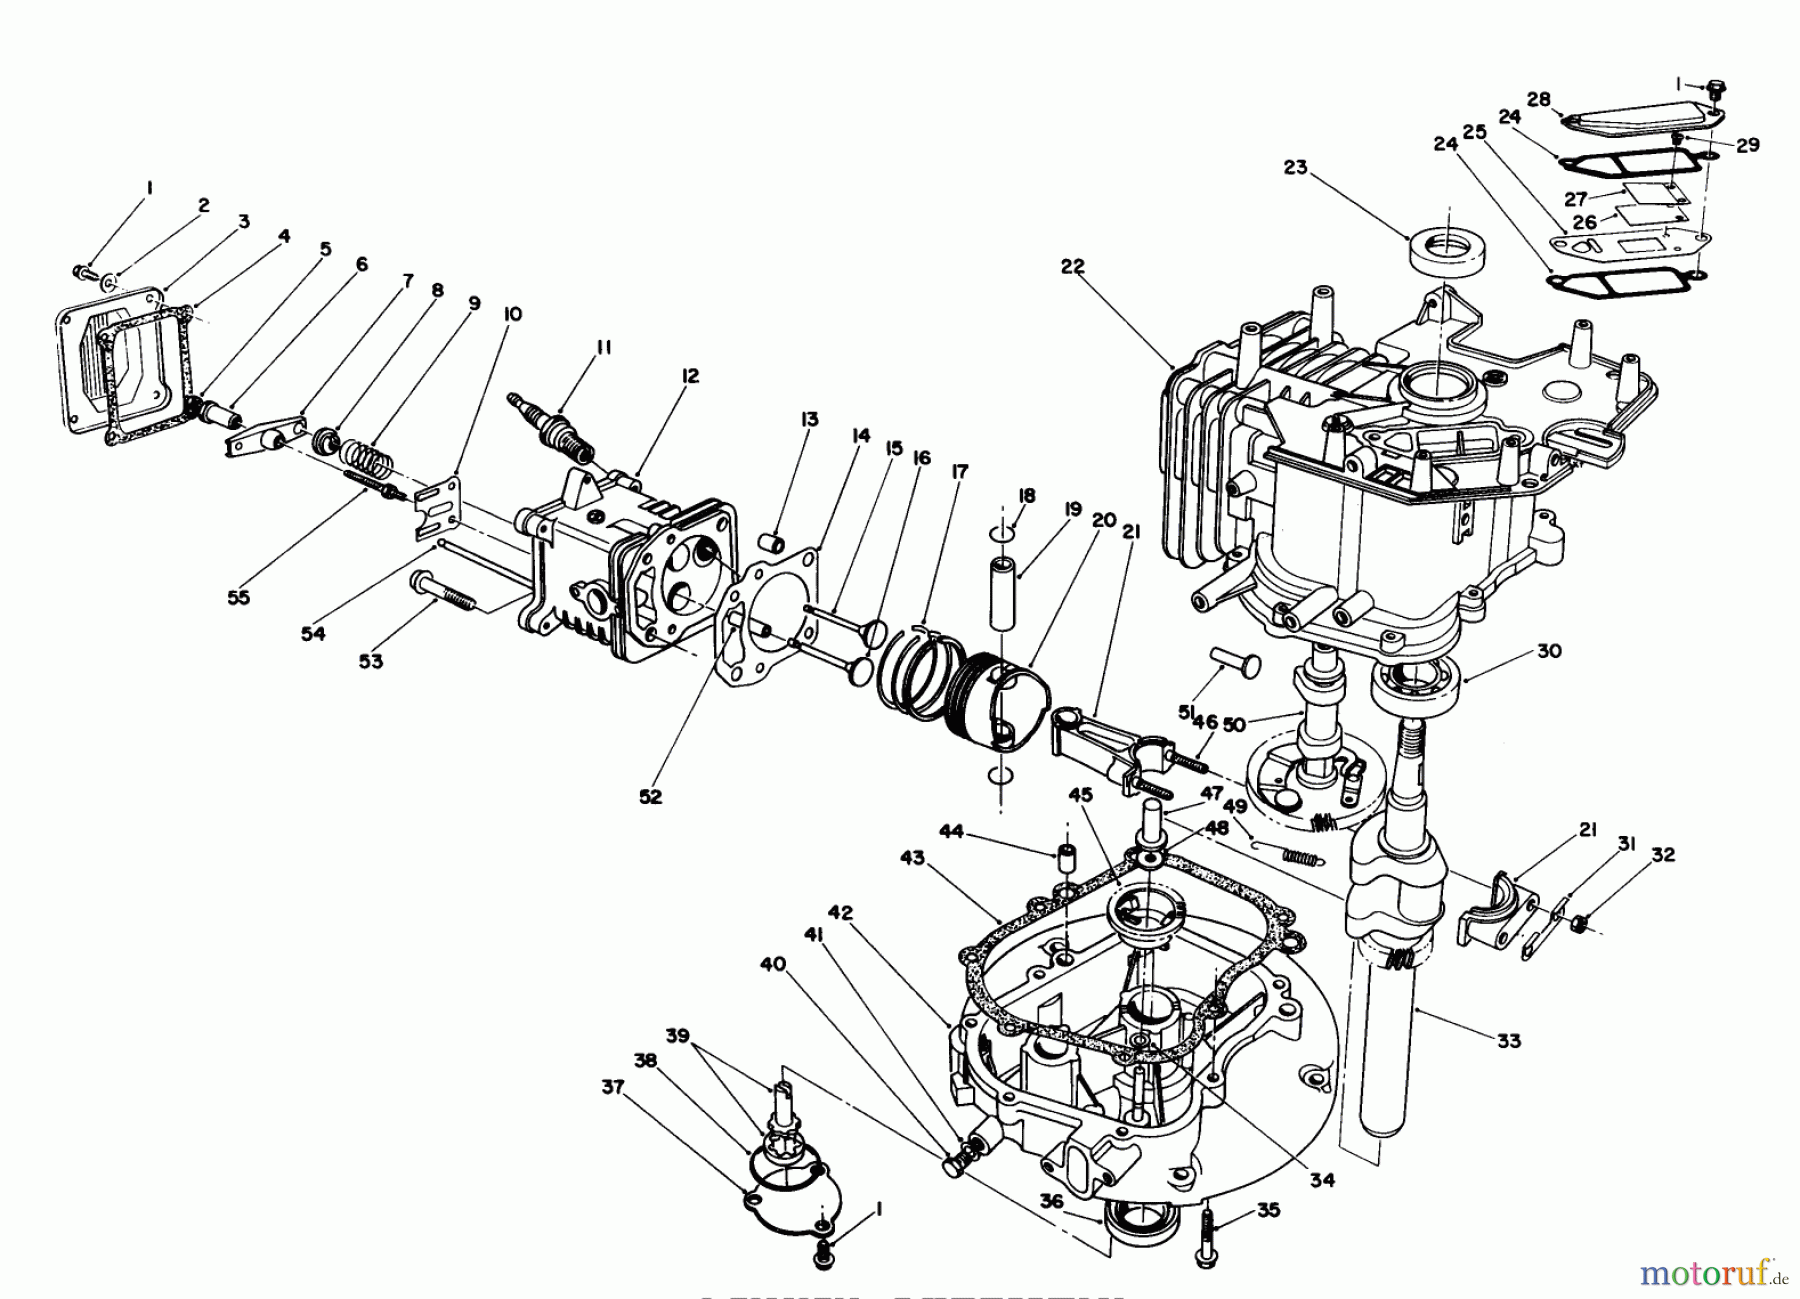  Toro Neu Mowers, Walk-Behind Seite 1 20627C - Toro Lawnmower, 1988 (8000001-8999999) ENGINE ASSEMBLY #2